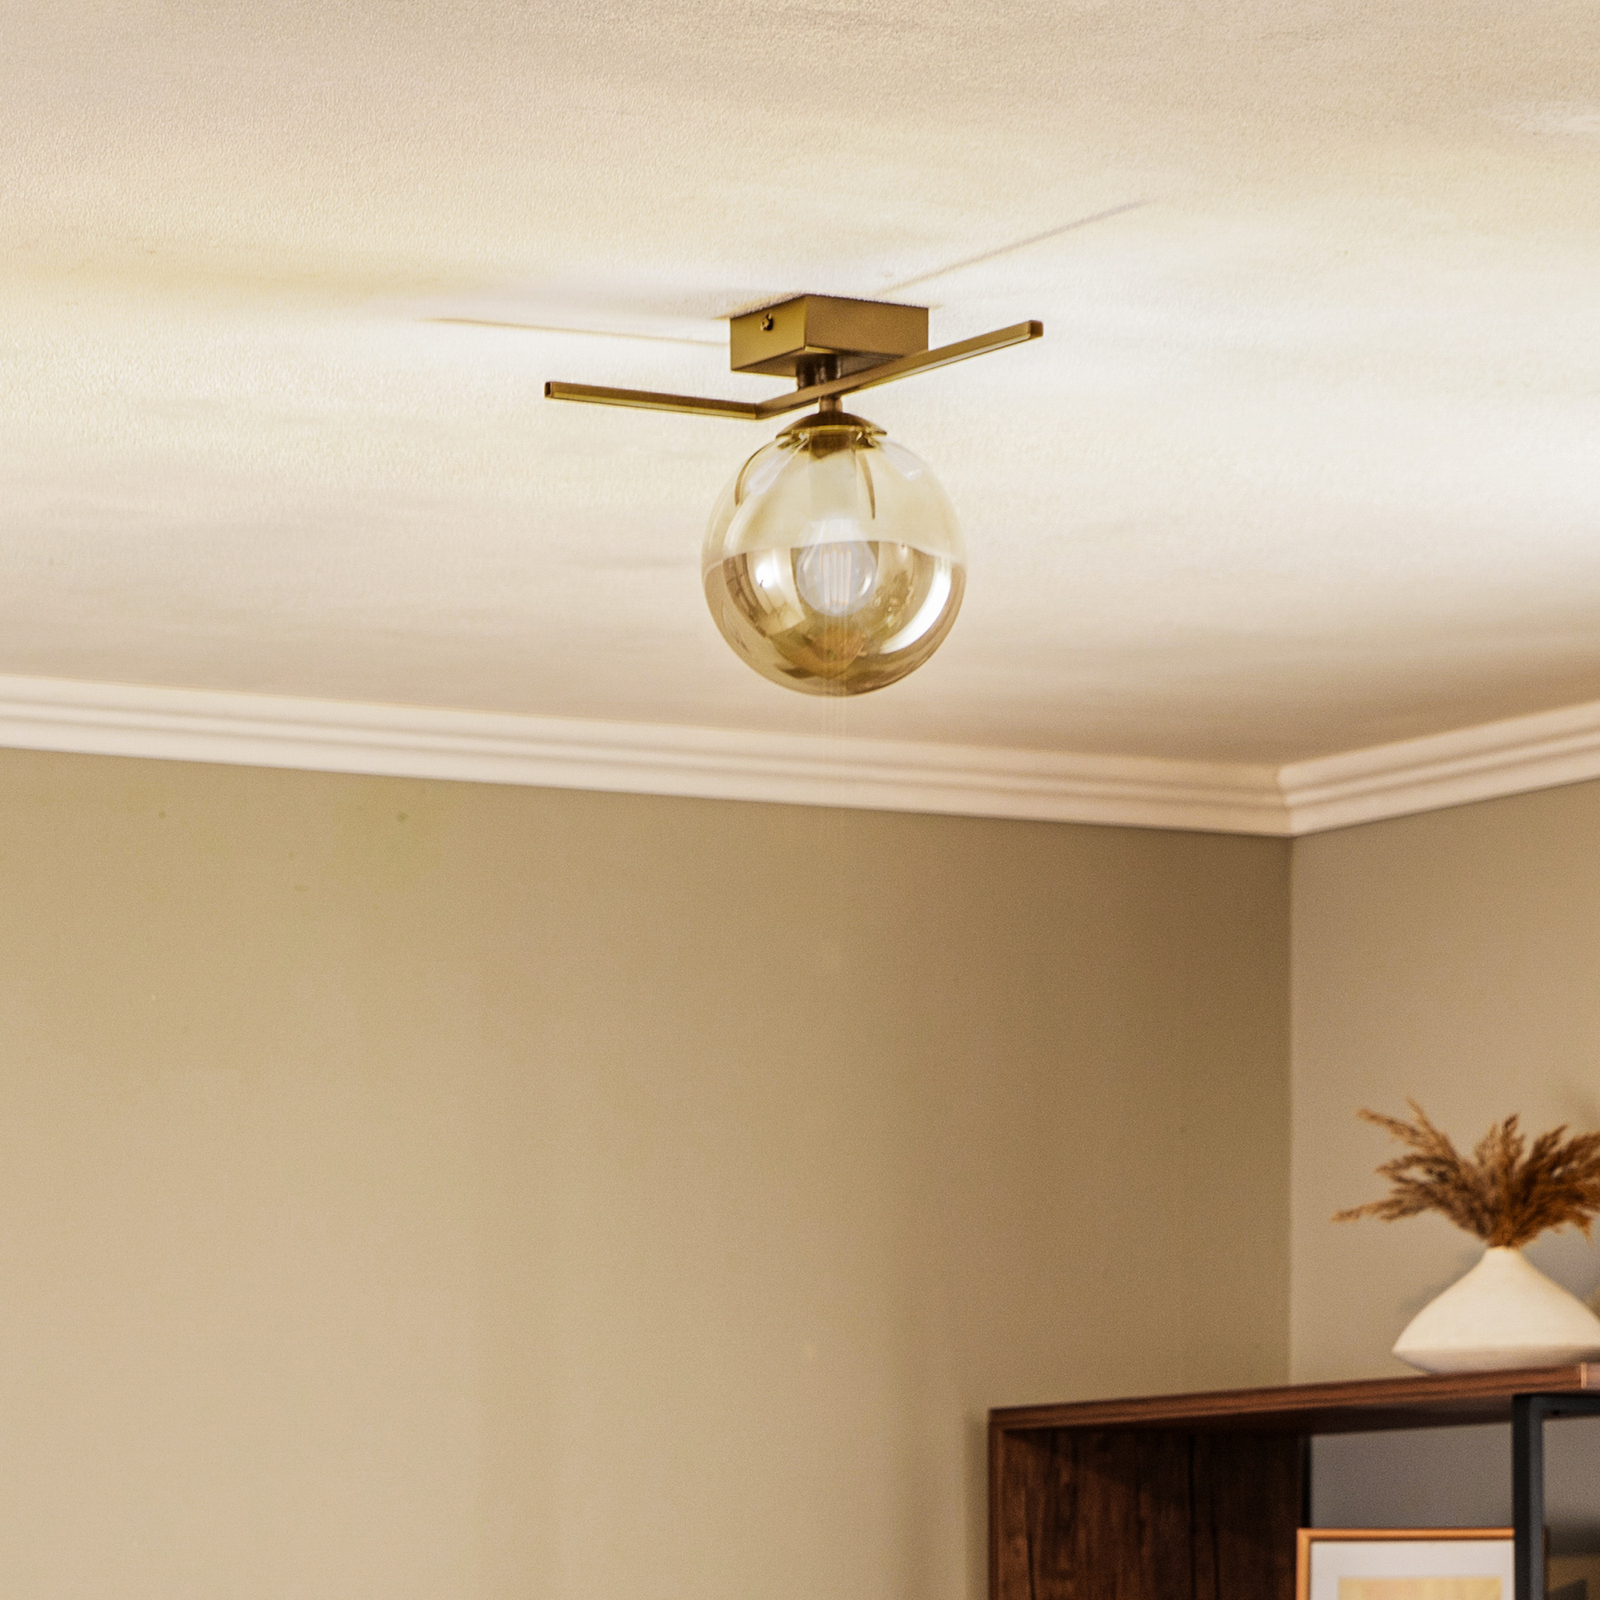 Imago 1G ceiling light, one-bulb, black/graphite